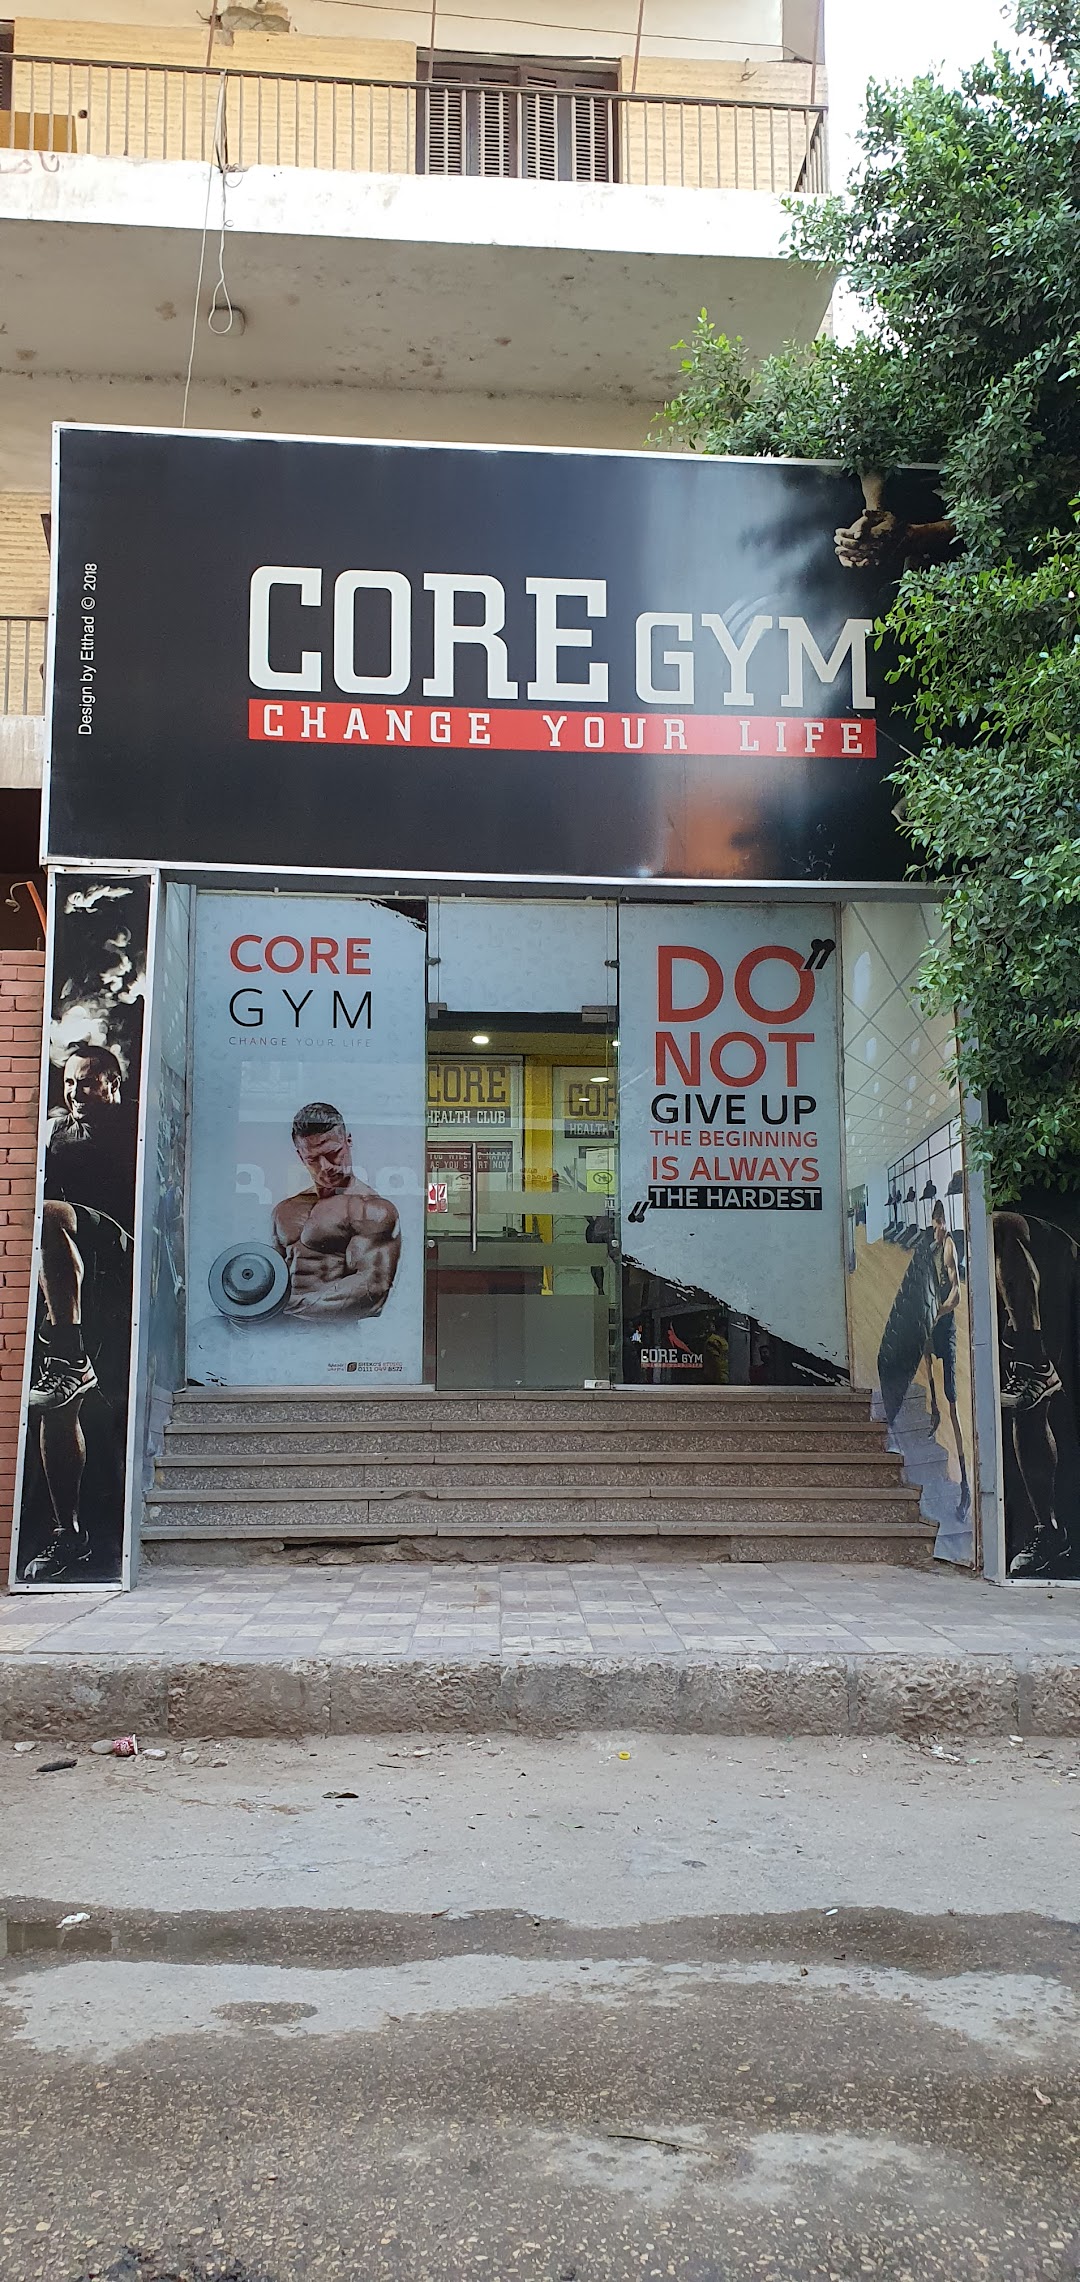 كور جيم - core gym